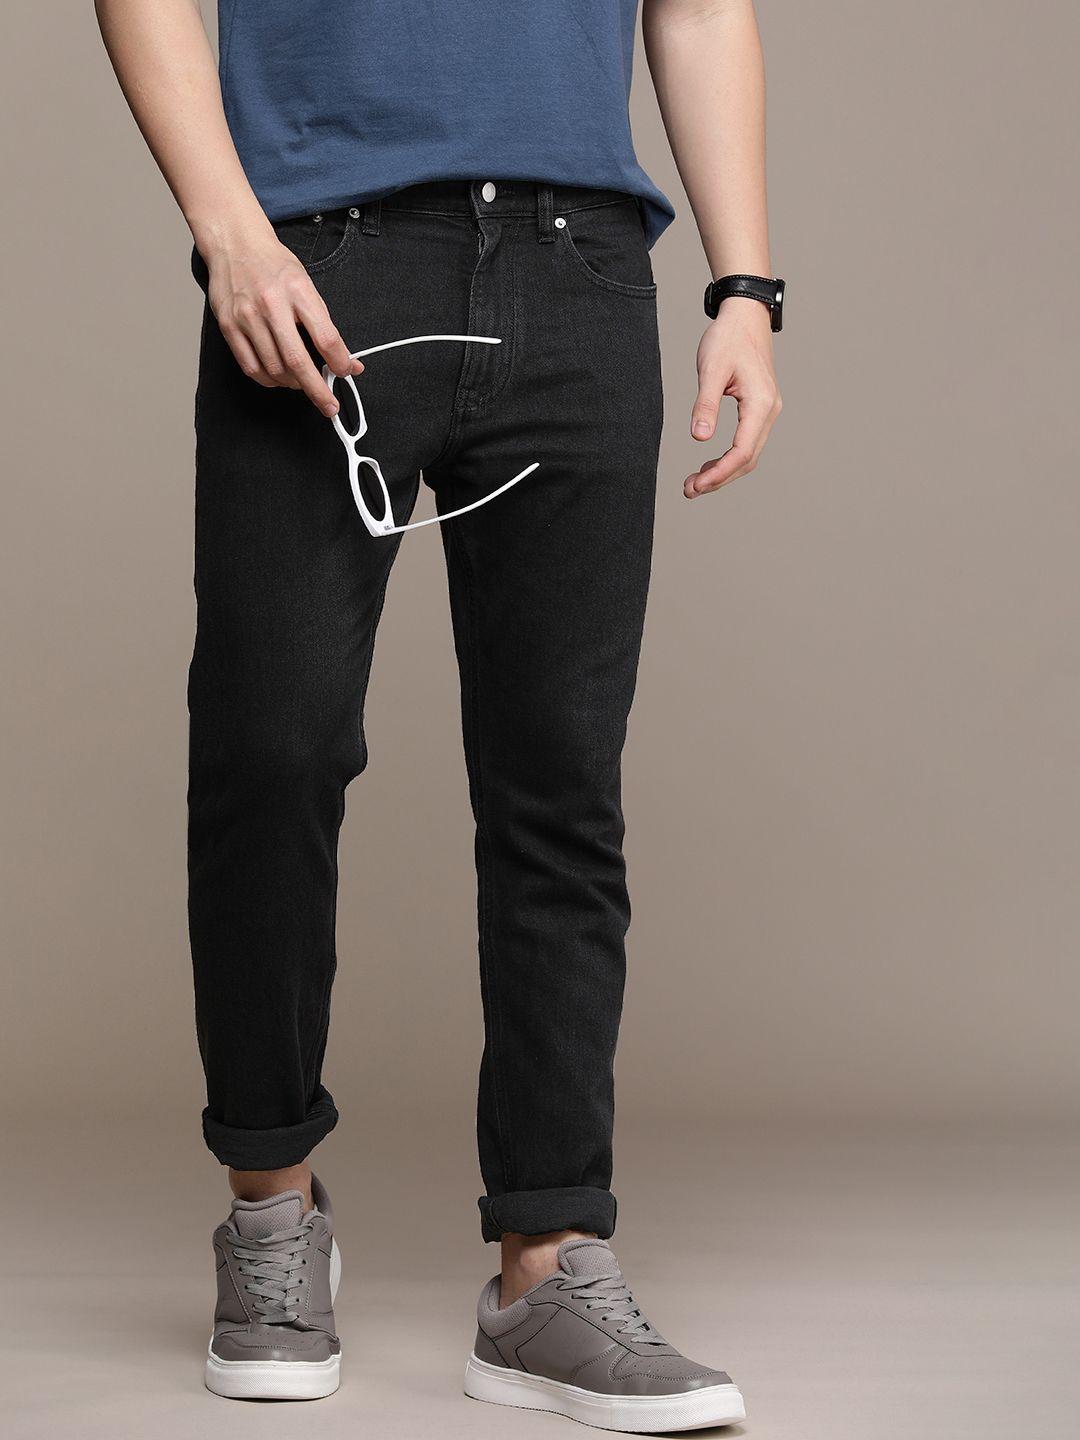 calvin-klein-jeans-men-stretchable-jeans